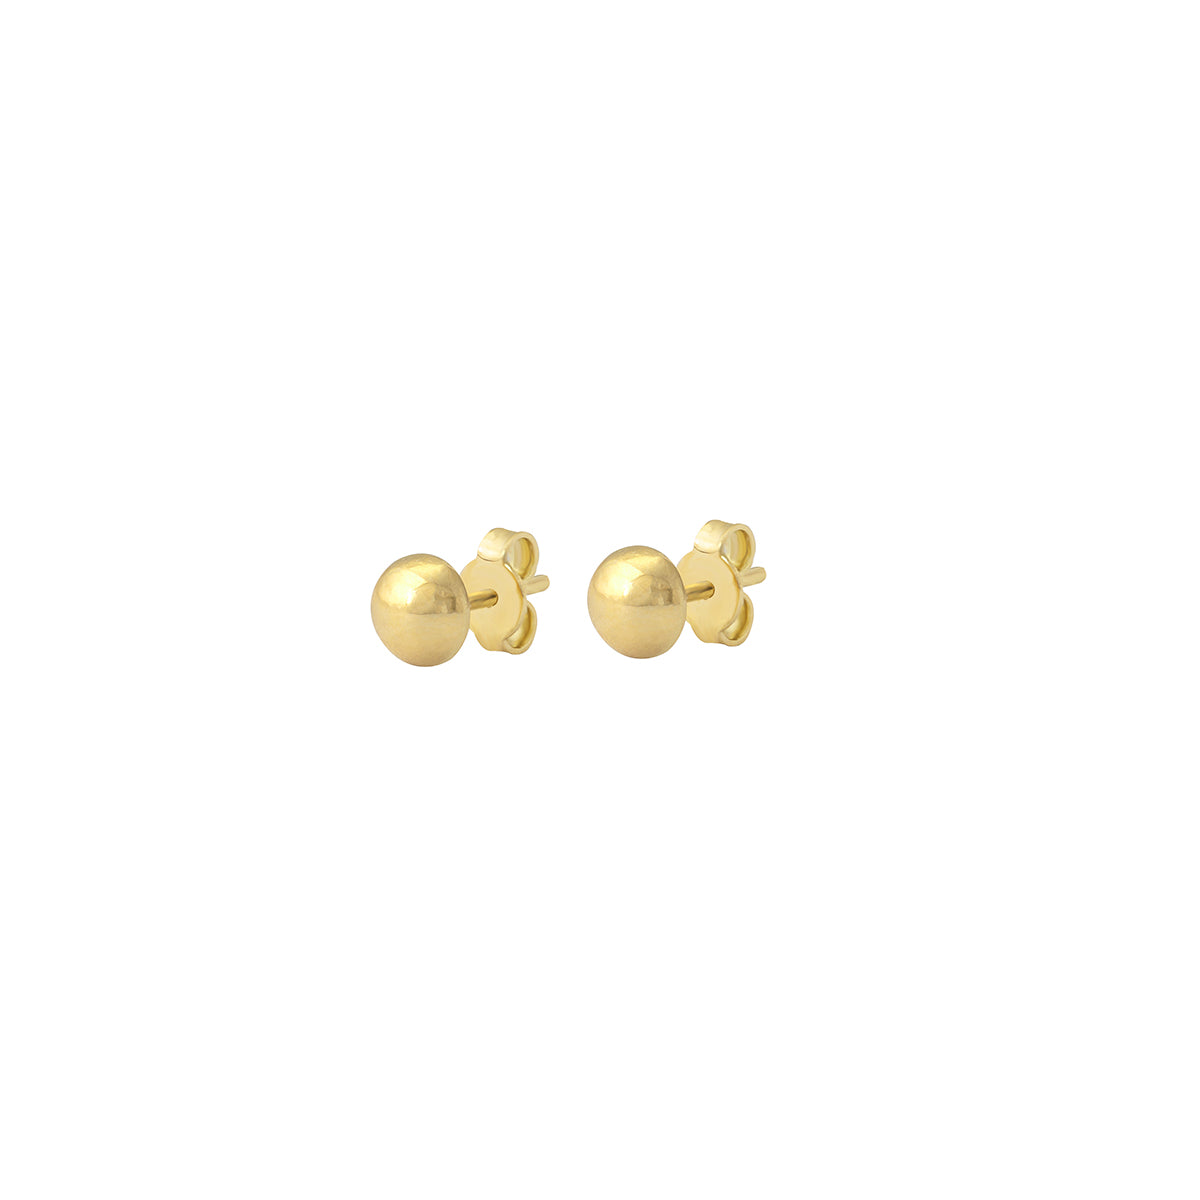 Ball Stud Earrings in 18K Yellow Gold